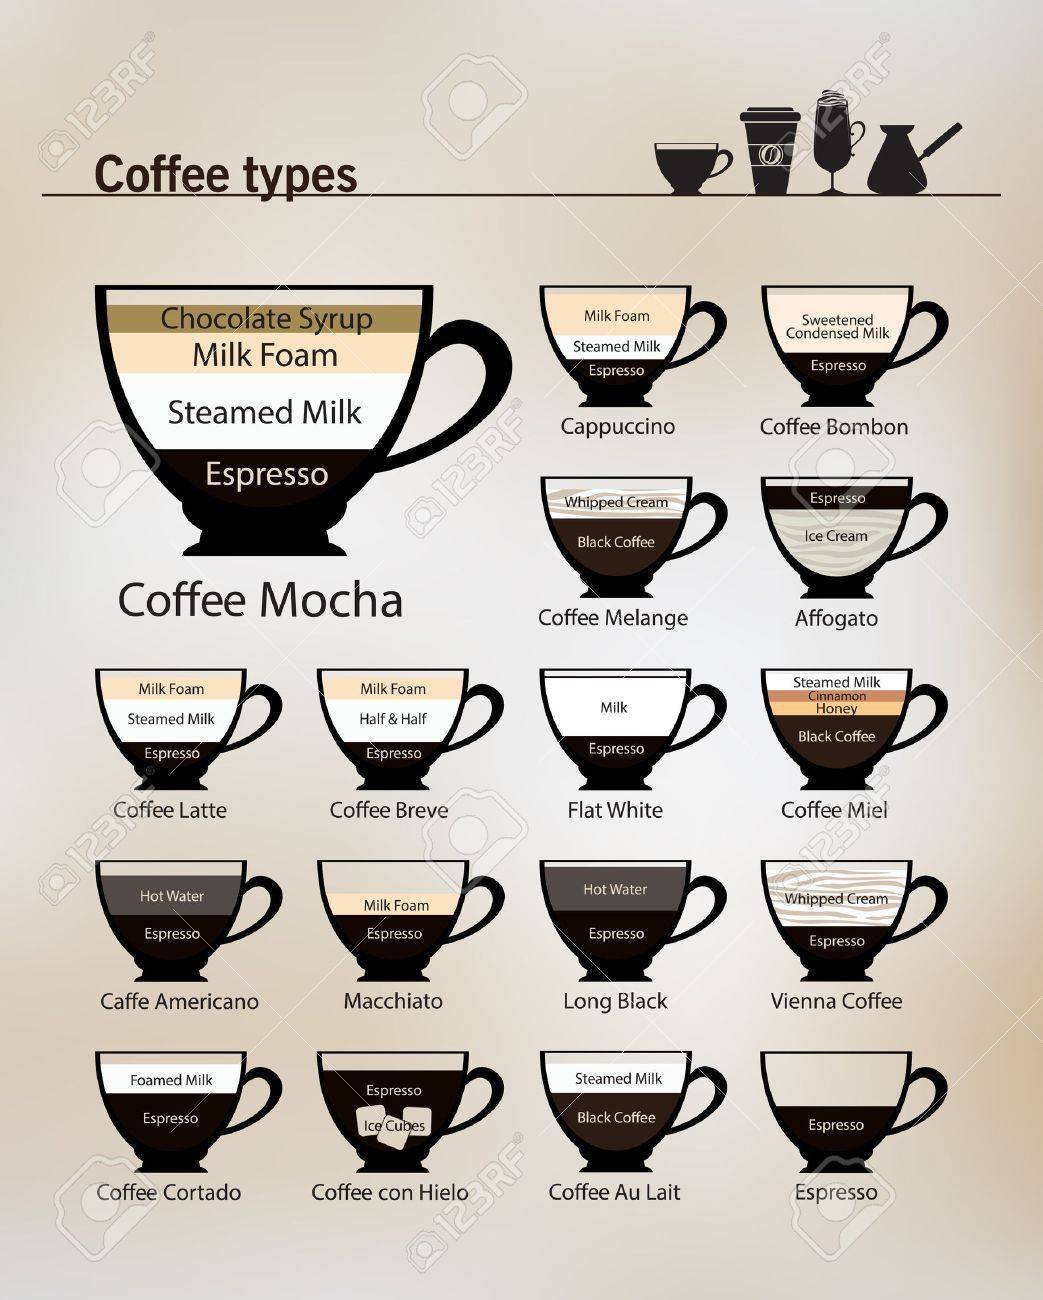 Виды кофе по сортам и типам приготовления